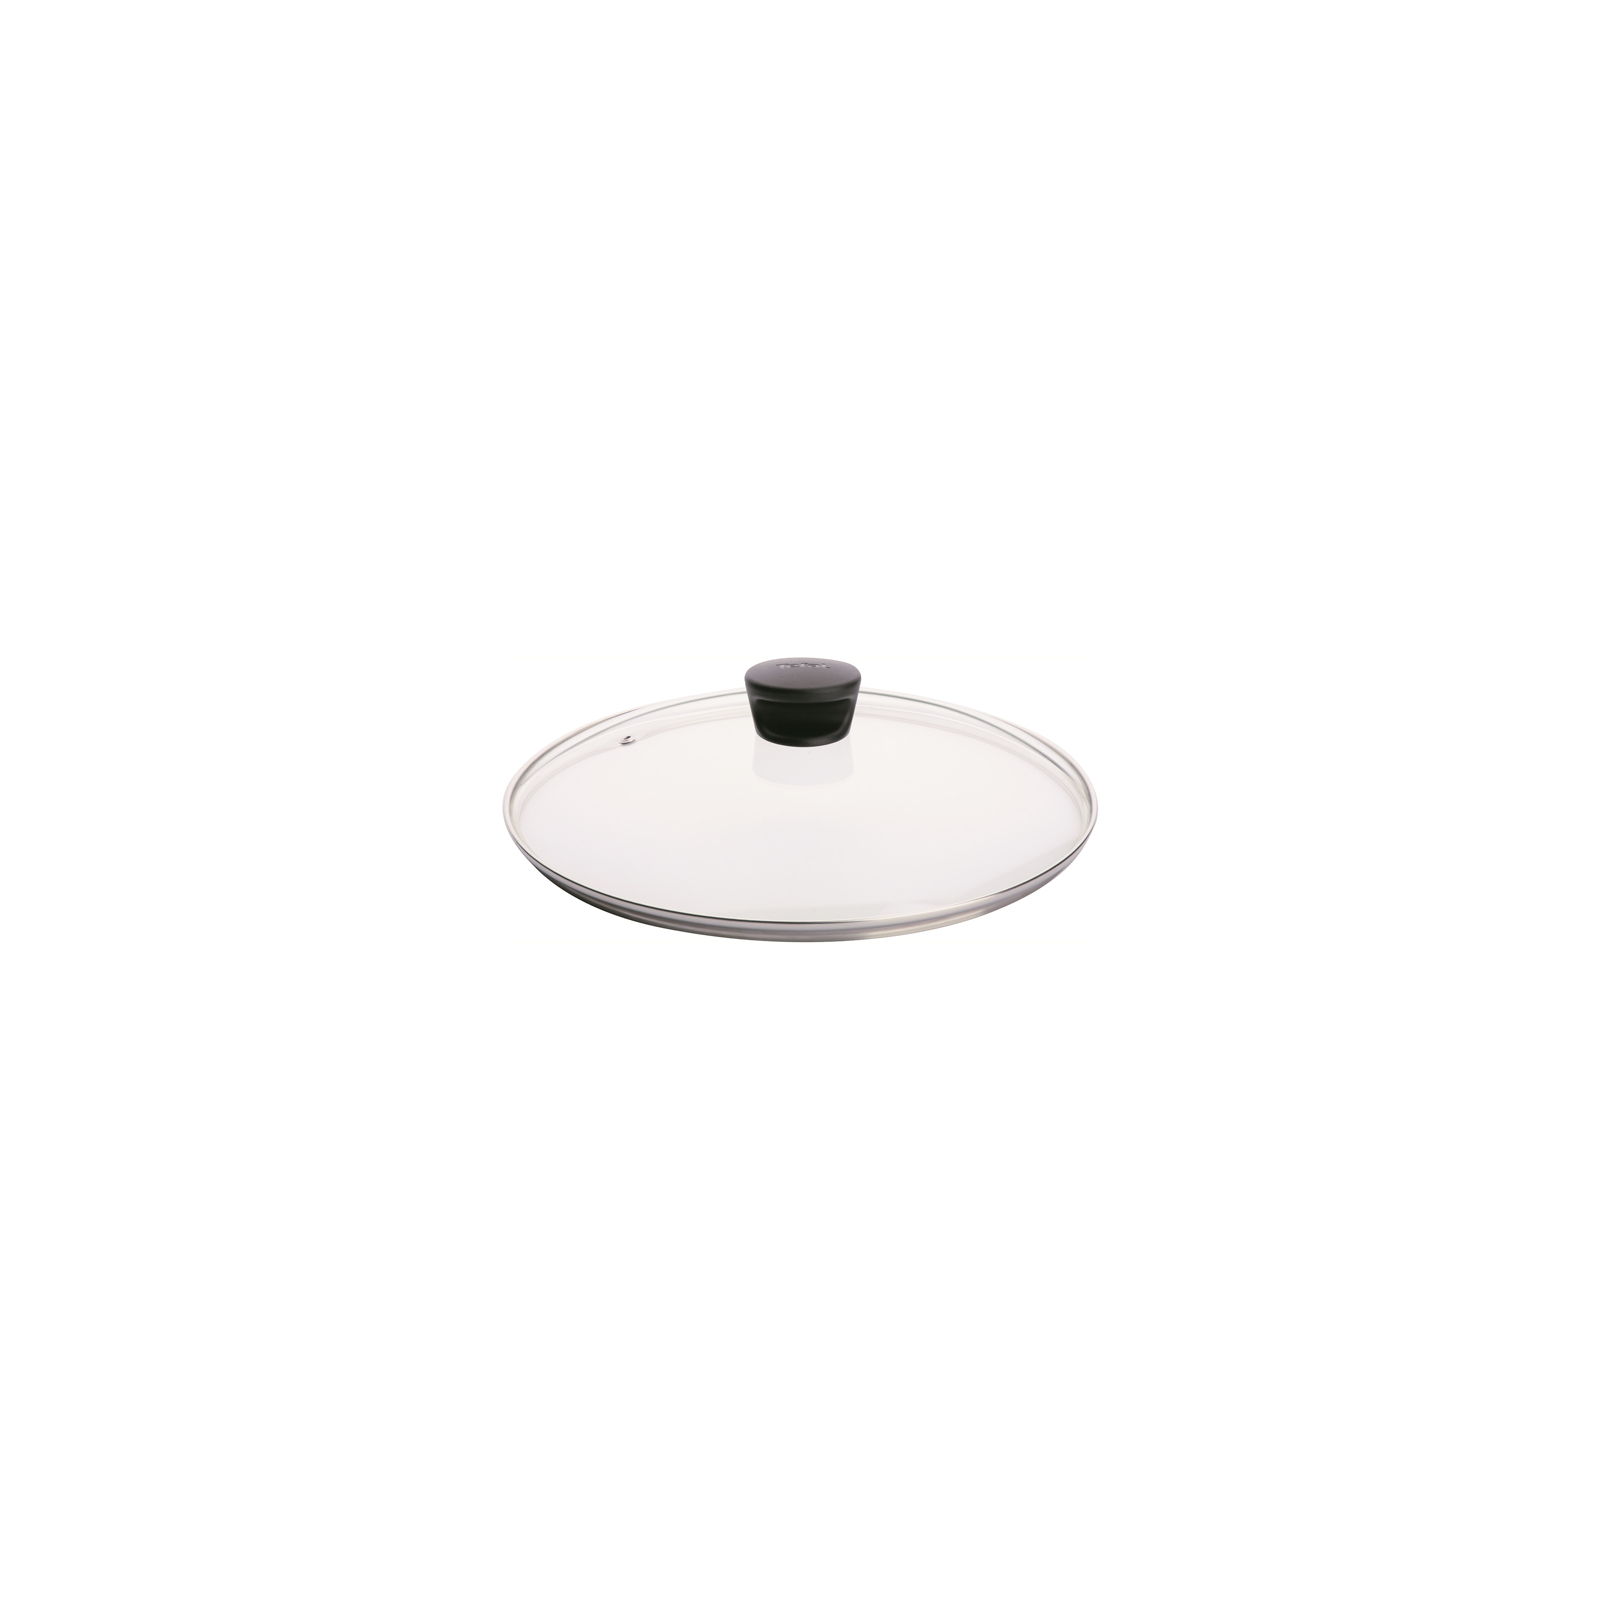 Крышка для посуды Tefal 24 cm (4090124)